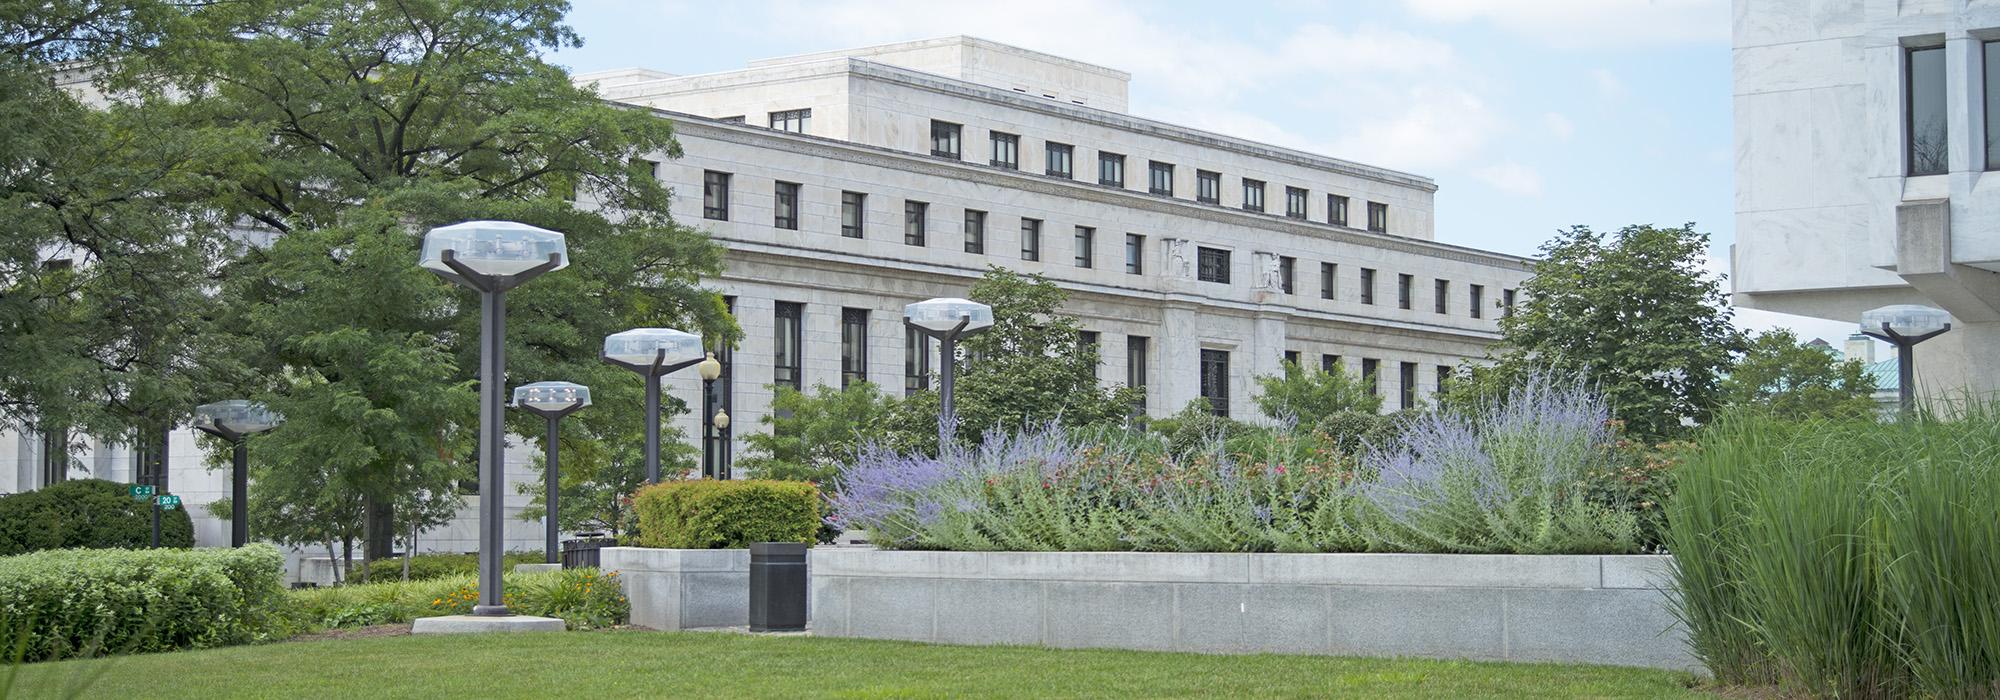 Federal Reserve Board Garden, Washington, DC